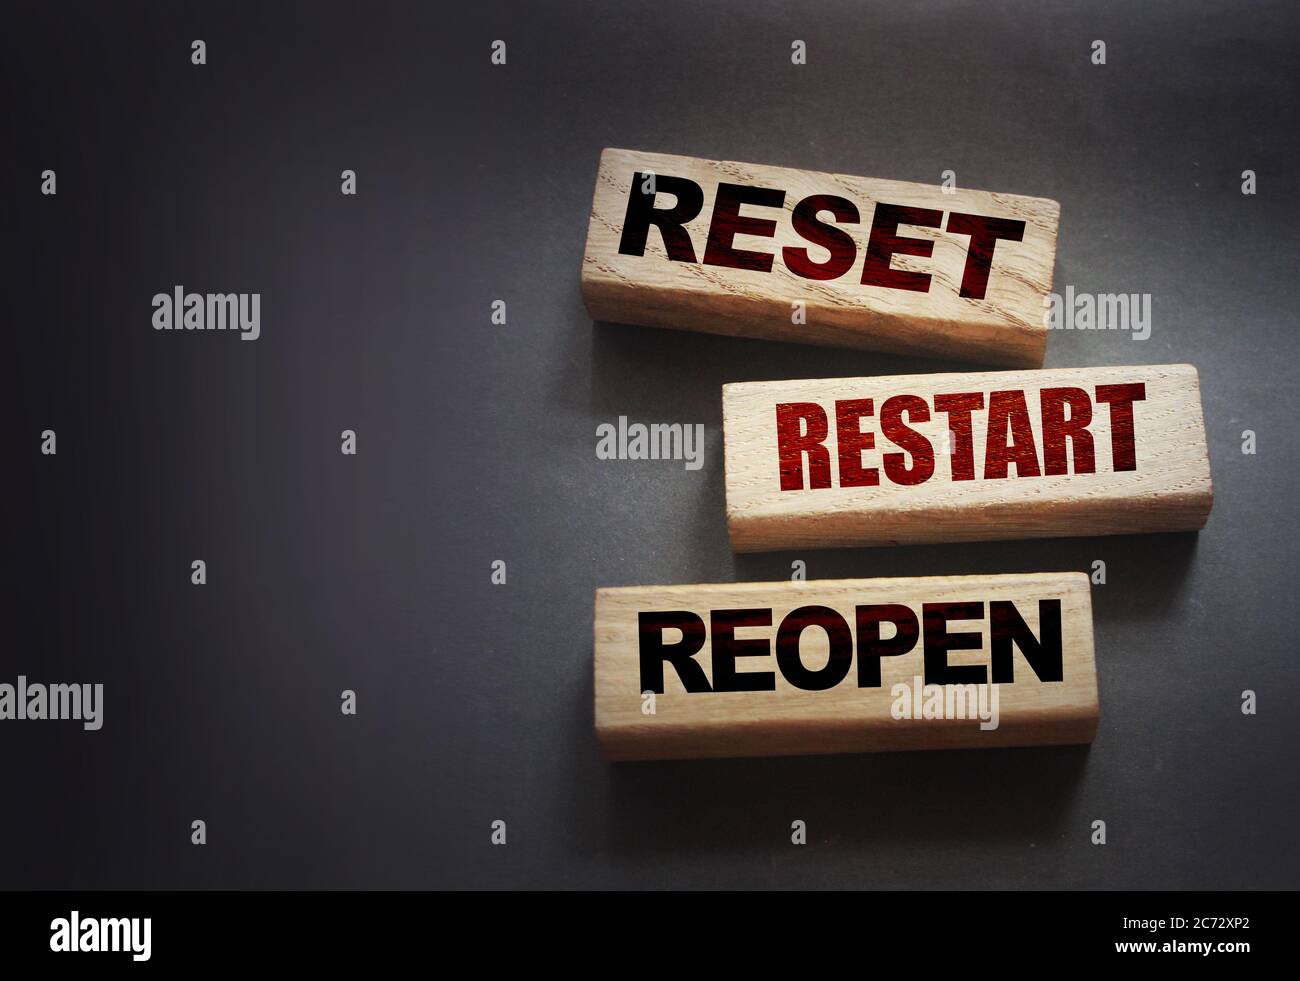 Reset, restart, reopen on wooden blocks on black . Post pandemic world concept Stock Photo